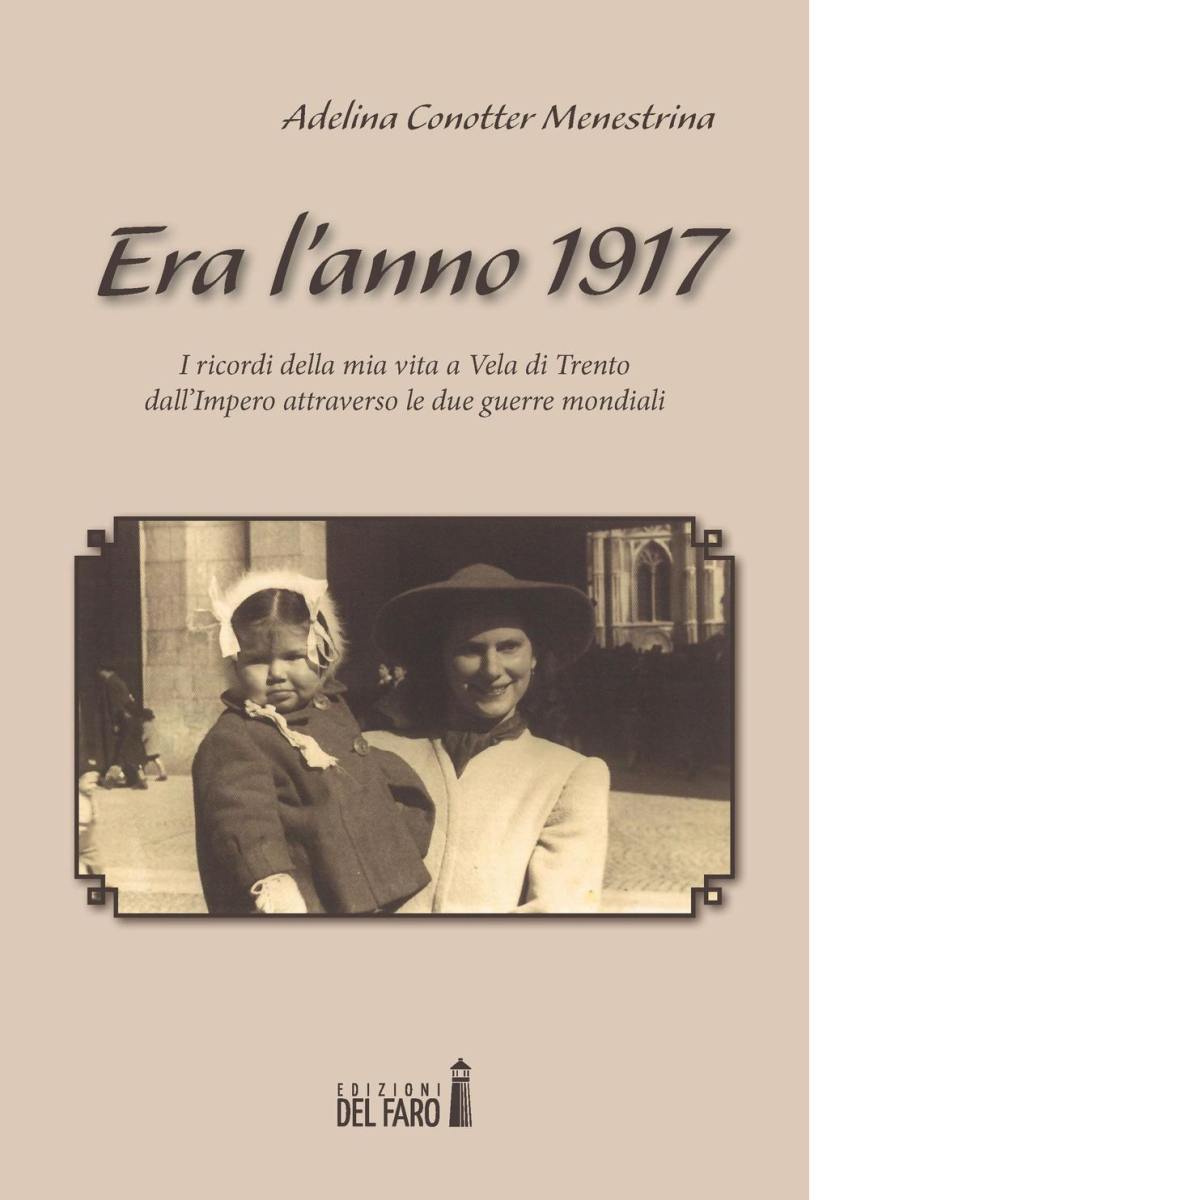 ERA L'ANNO 1917 di Conotter Menestrina Adelina - Edizioni Del faro, 2017